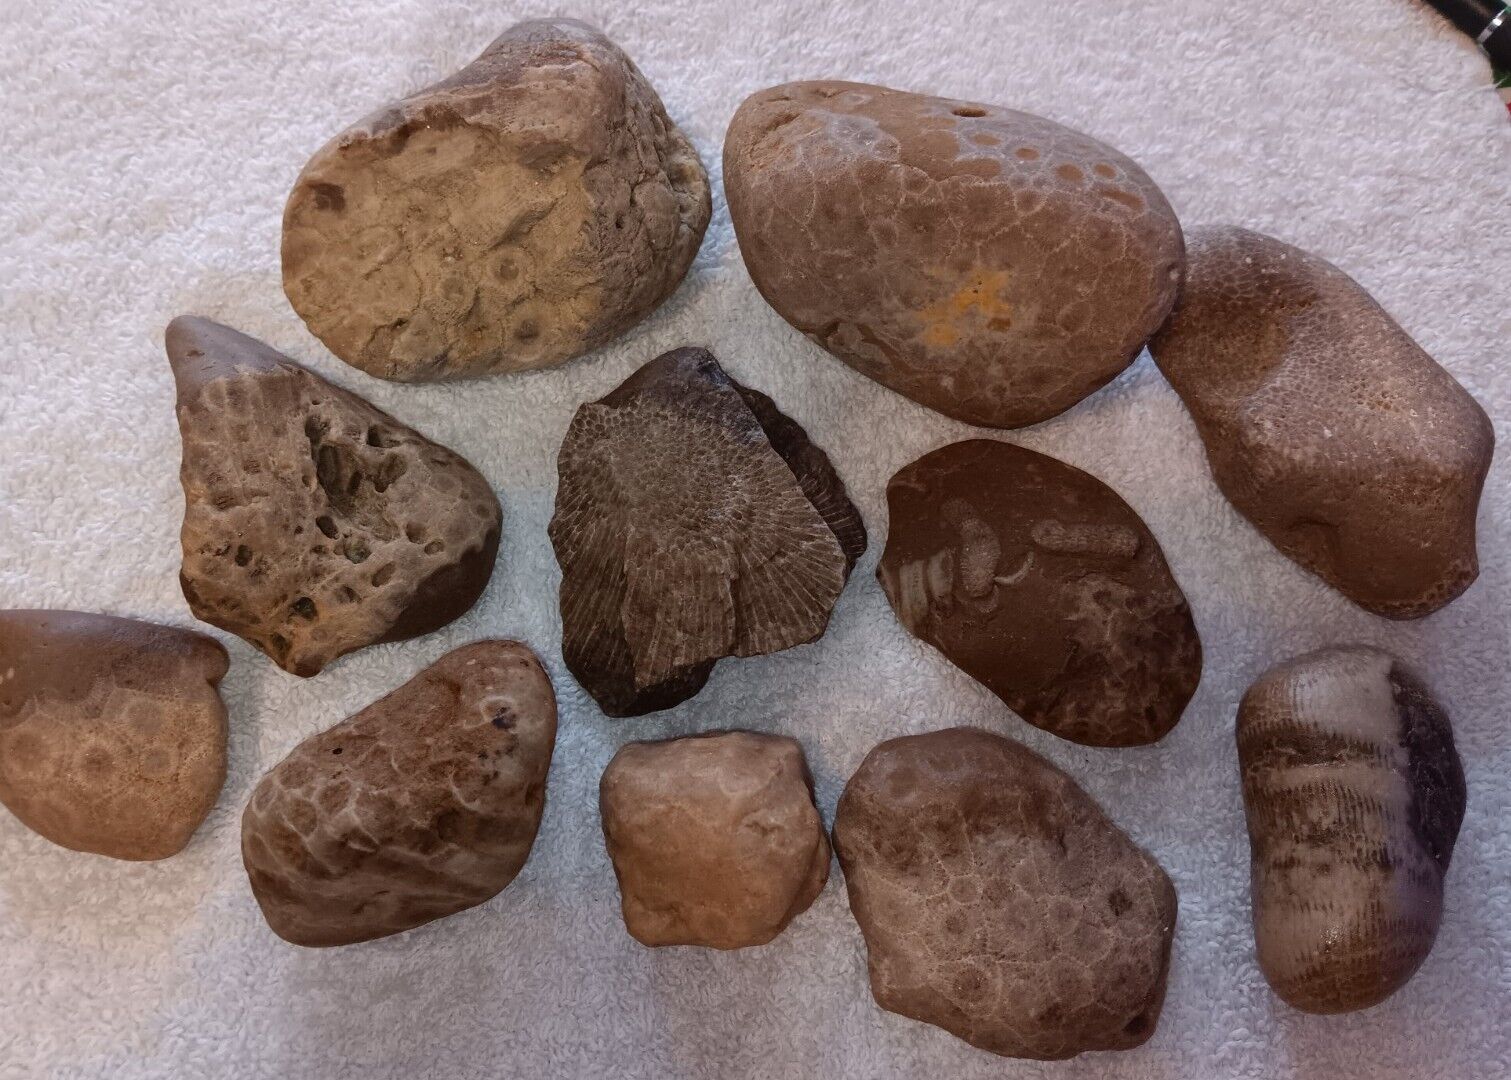 Large Petoskey Charlevoix Stone & Fossil Lot Unpolished Lake Michigan Rocks 3lbs